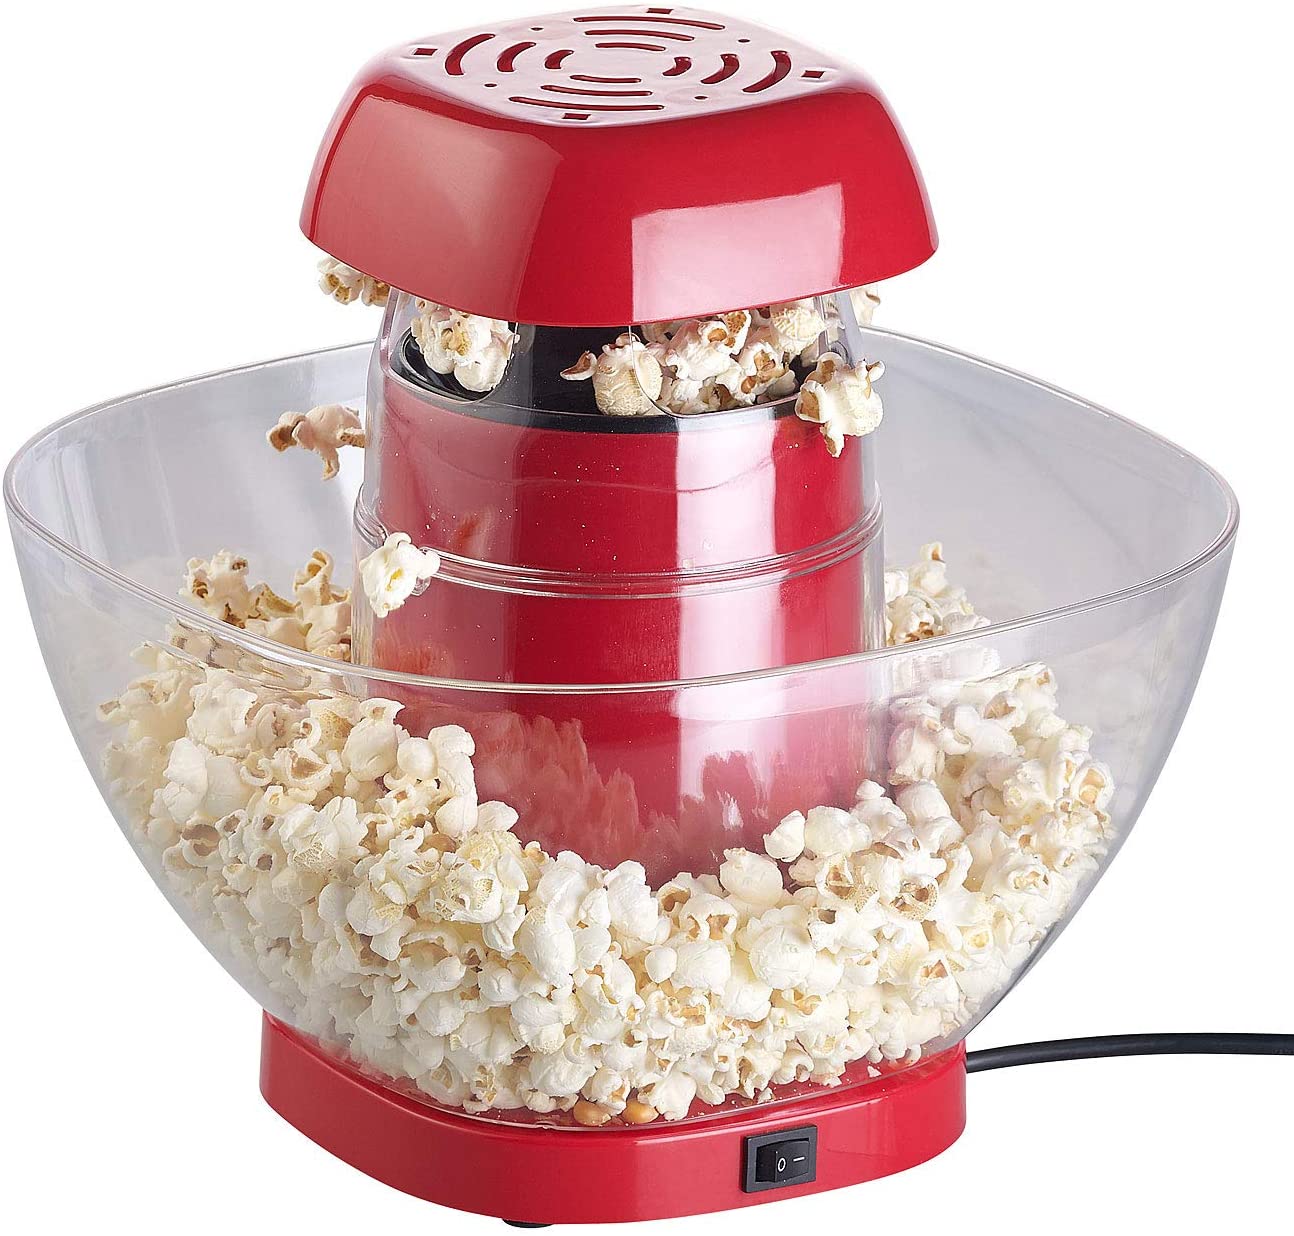 Rosenstein & Söhne Popcorn Machine: XL Hot Air Popcorn Machine for Up to 100 g Maize (Hot Air Popcorn Machine)